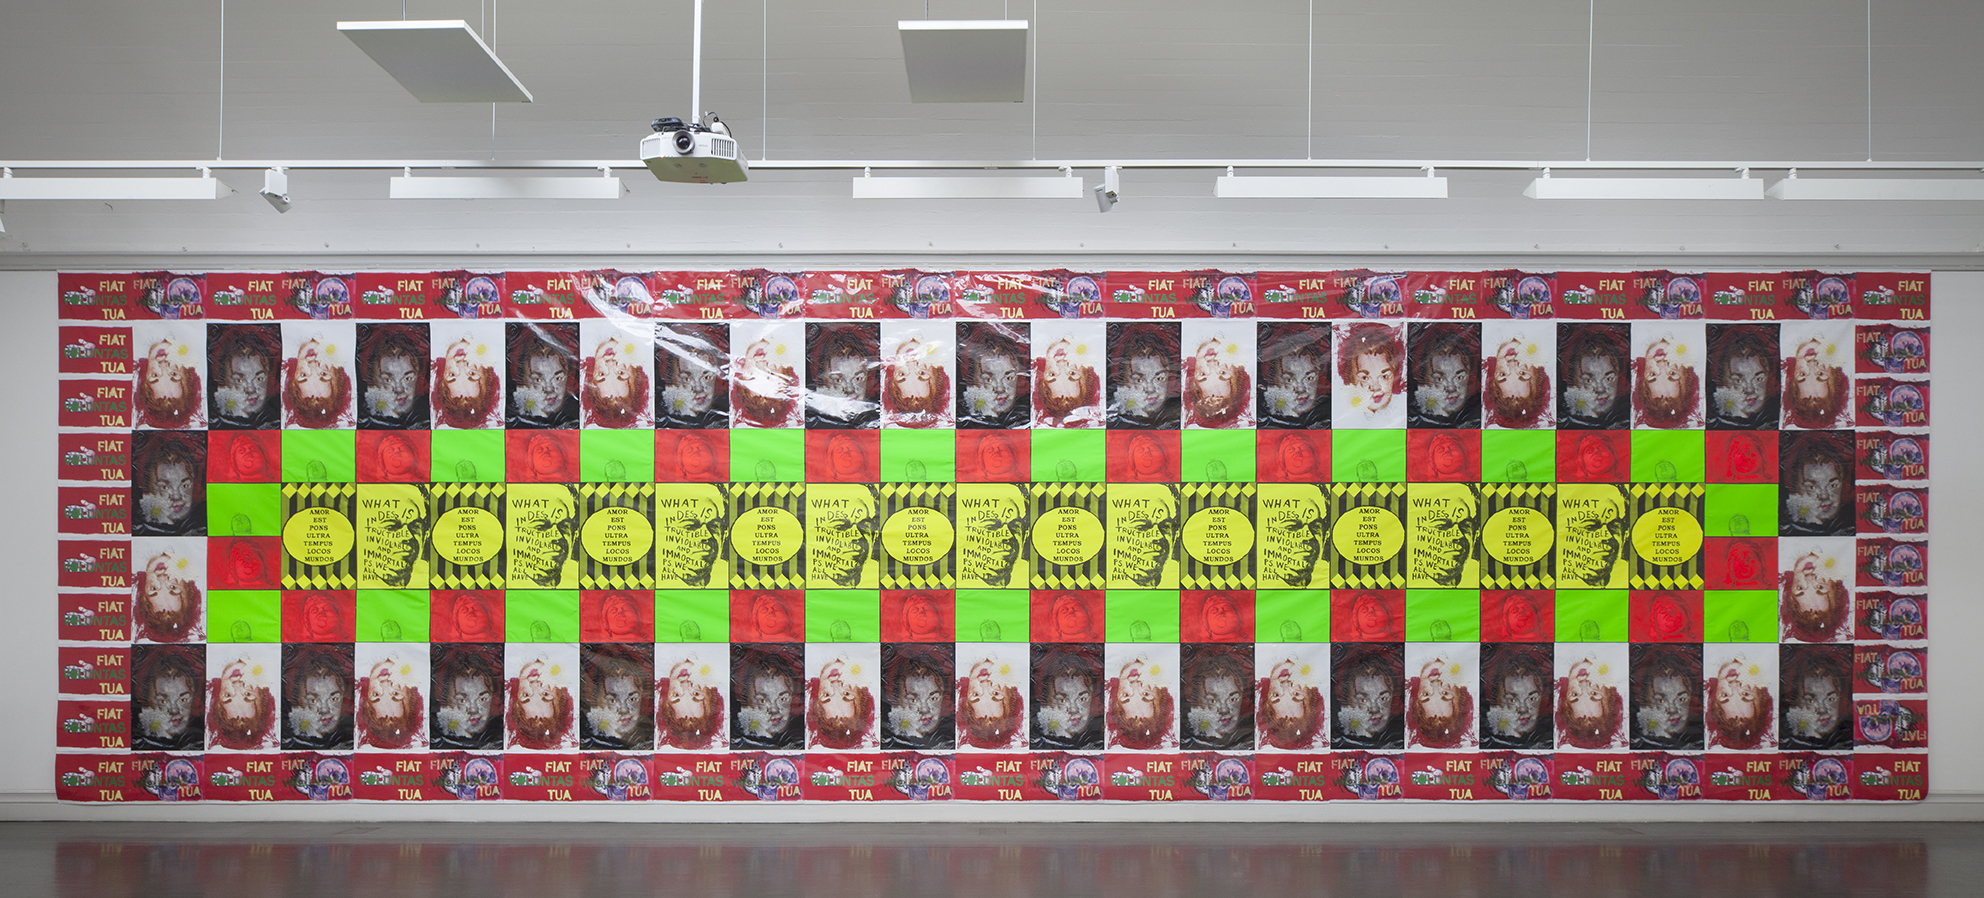 Jukka Korkeila, Fiat Voluntas Tua (Thy will be done), poster installation, Last Artists´ exhibition, kunsthalle, Helsinki, Finland, 2014-15, curated by Marketta Haila & Villu Jaanisoo